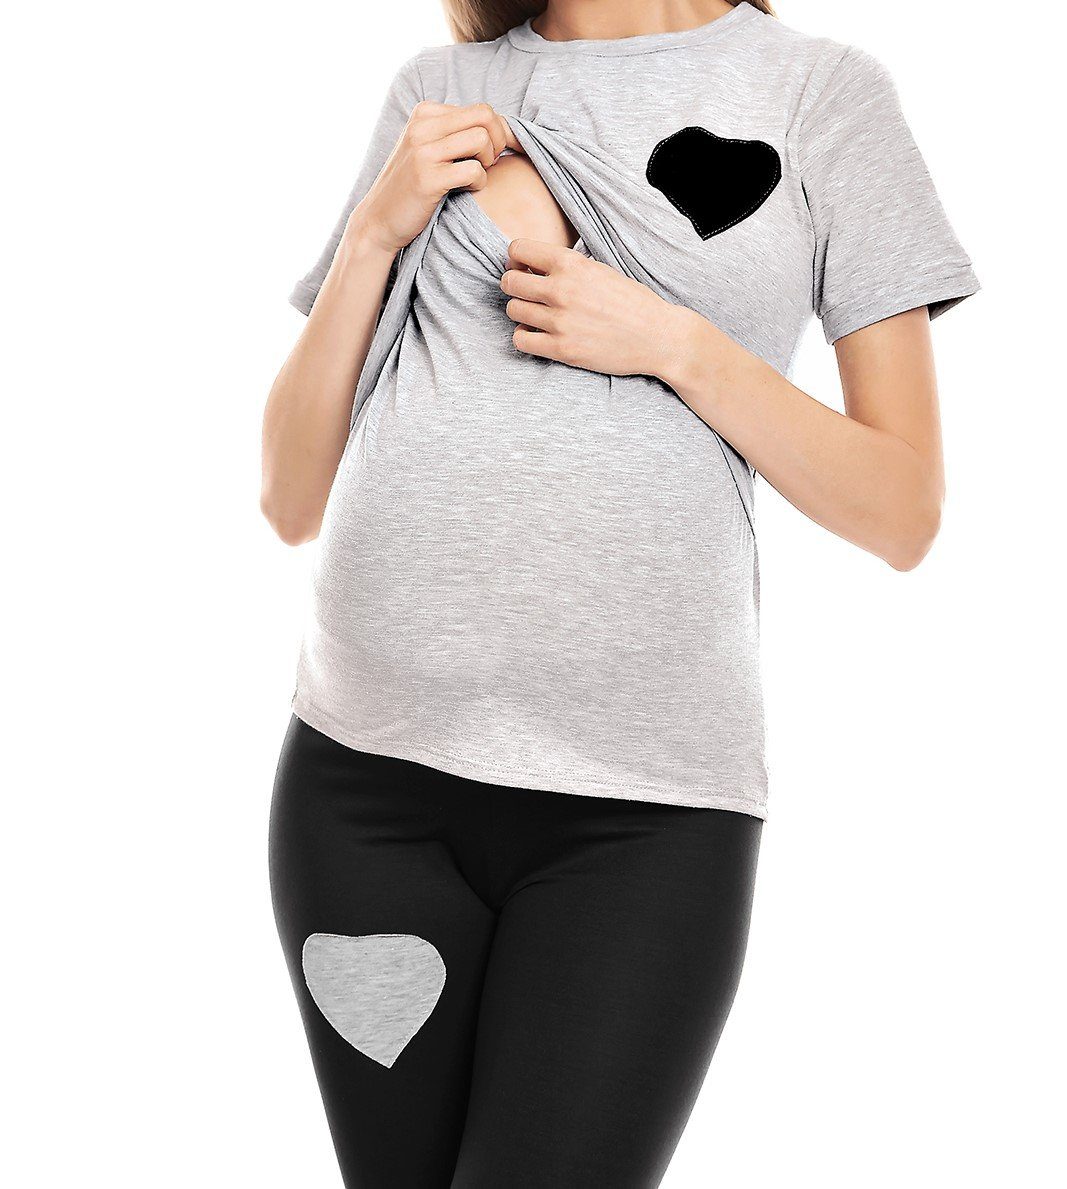 PeeKaBoo Umstandspyjama Schlafanzug Stillen Stillschlafanzug grau/schwarz Schwangerschaft